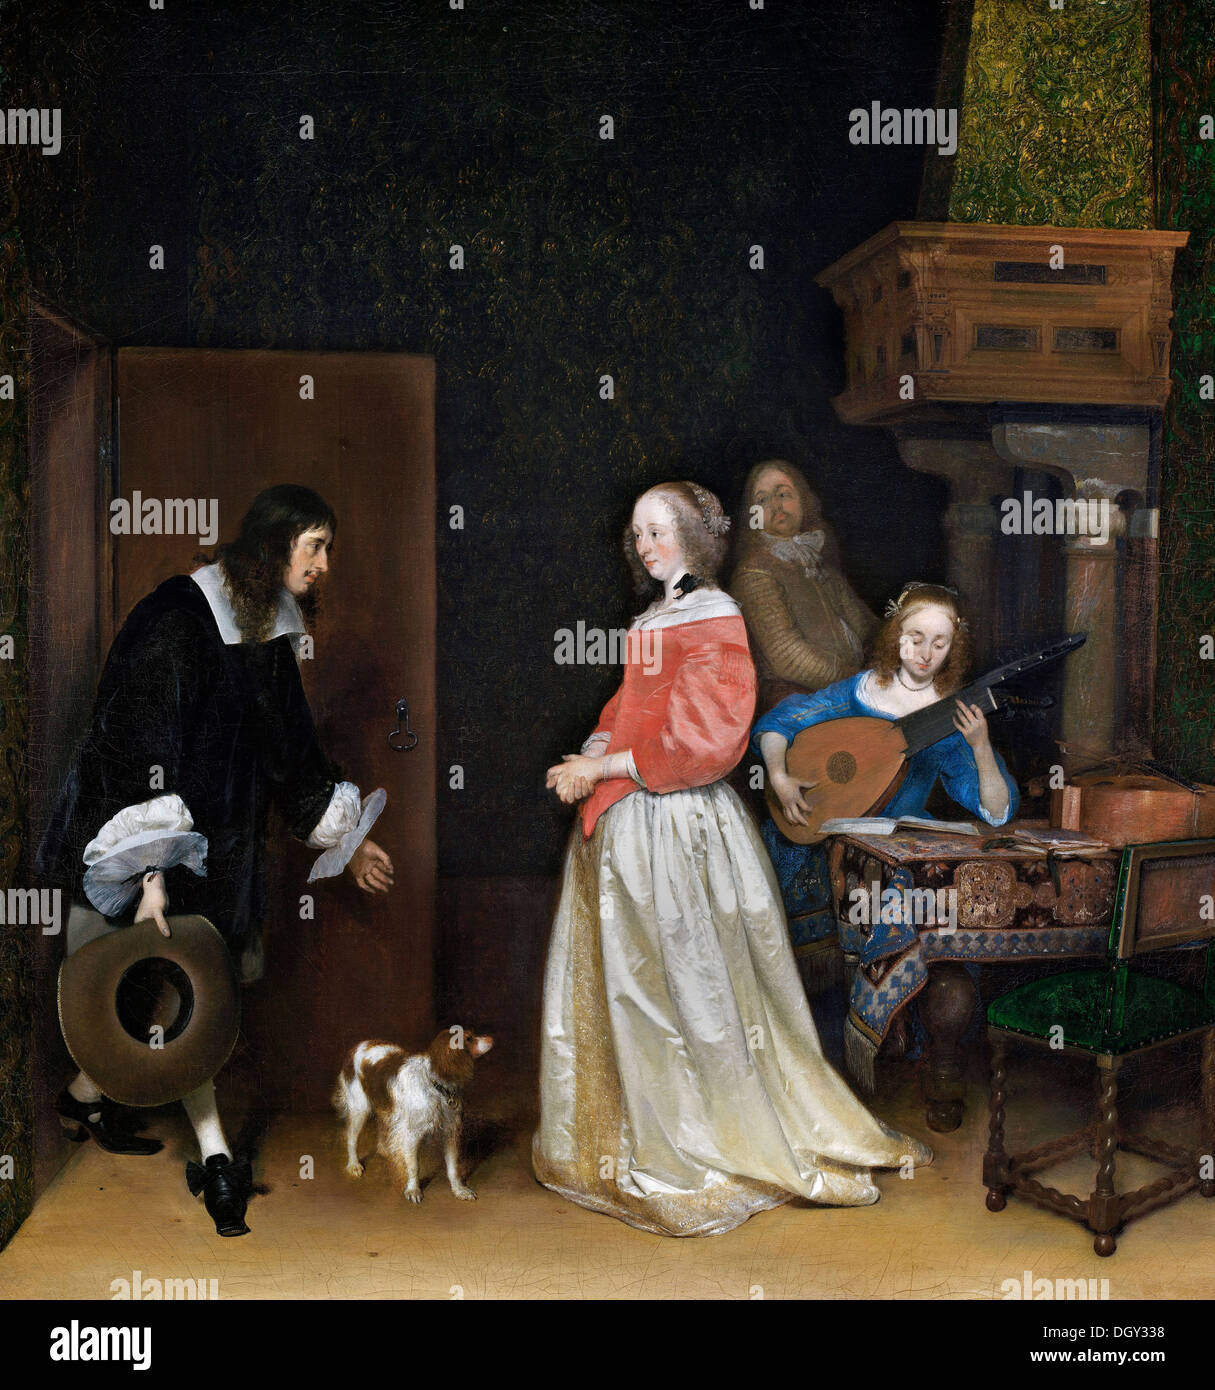 Gerard Ter Borch, le prétendant de sa visite. Circa 1658. Huile sur toile. National Gallery of Art, Washington, D.C. Banque D'Images